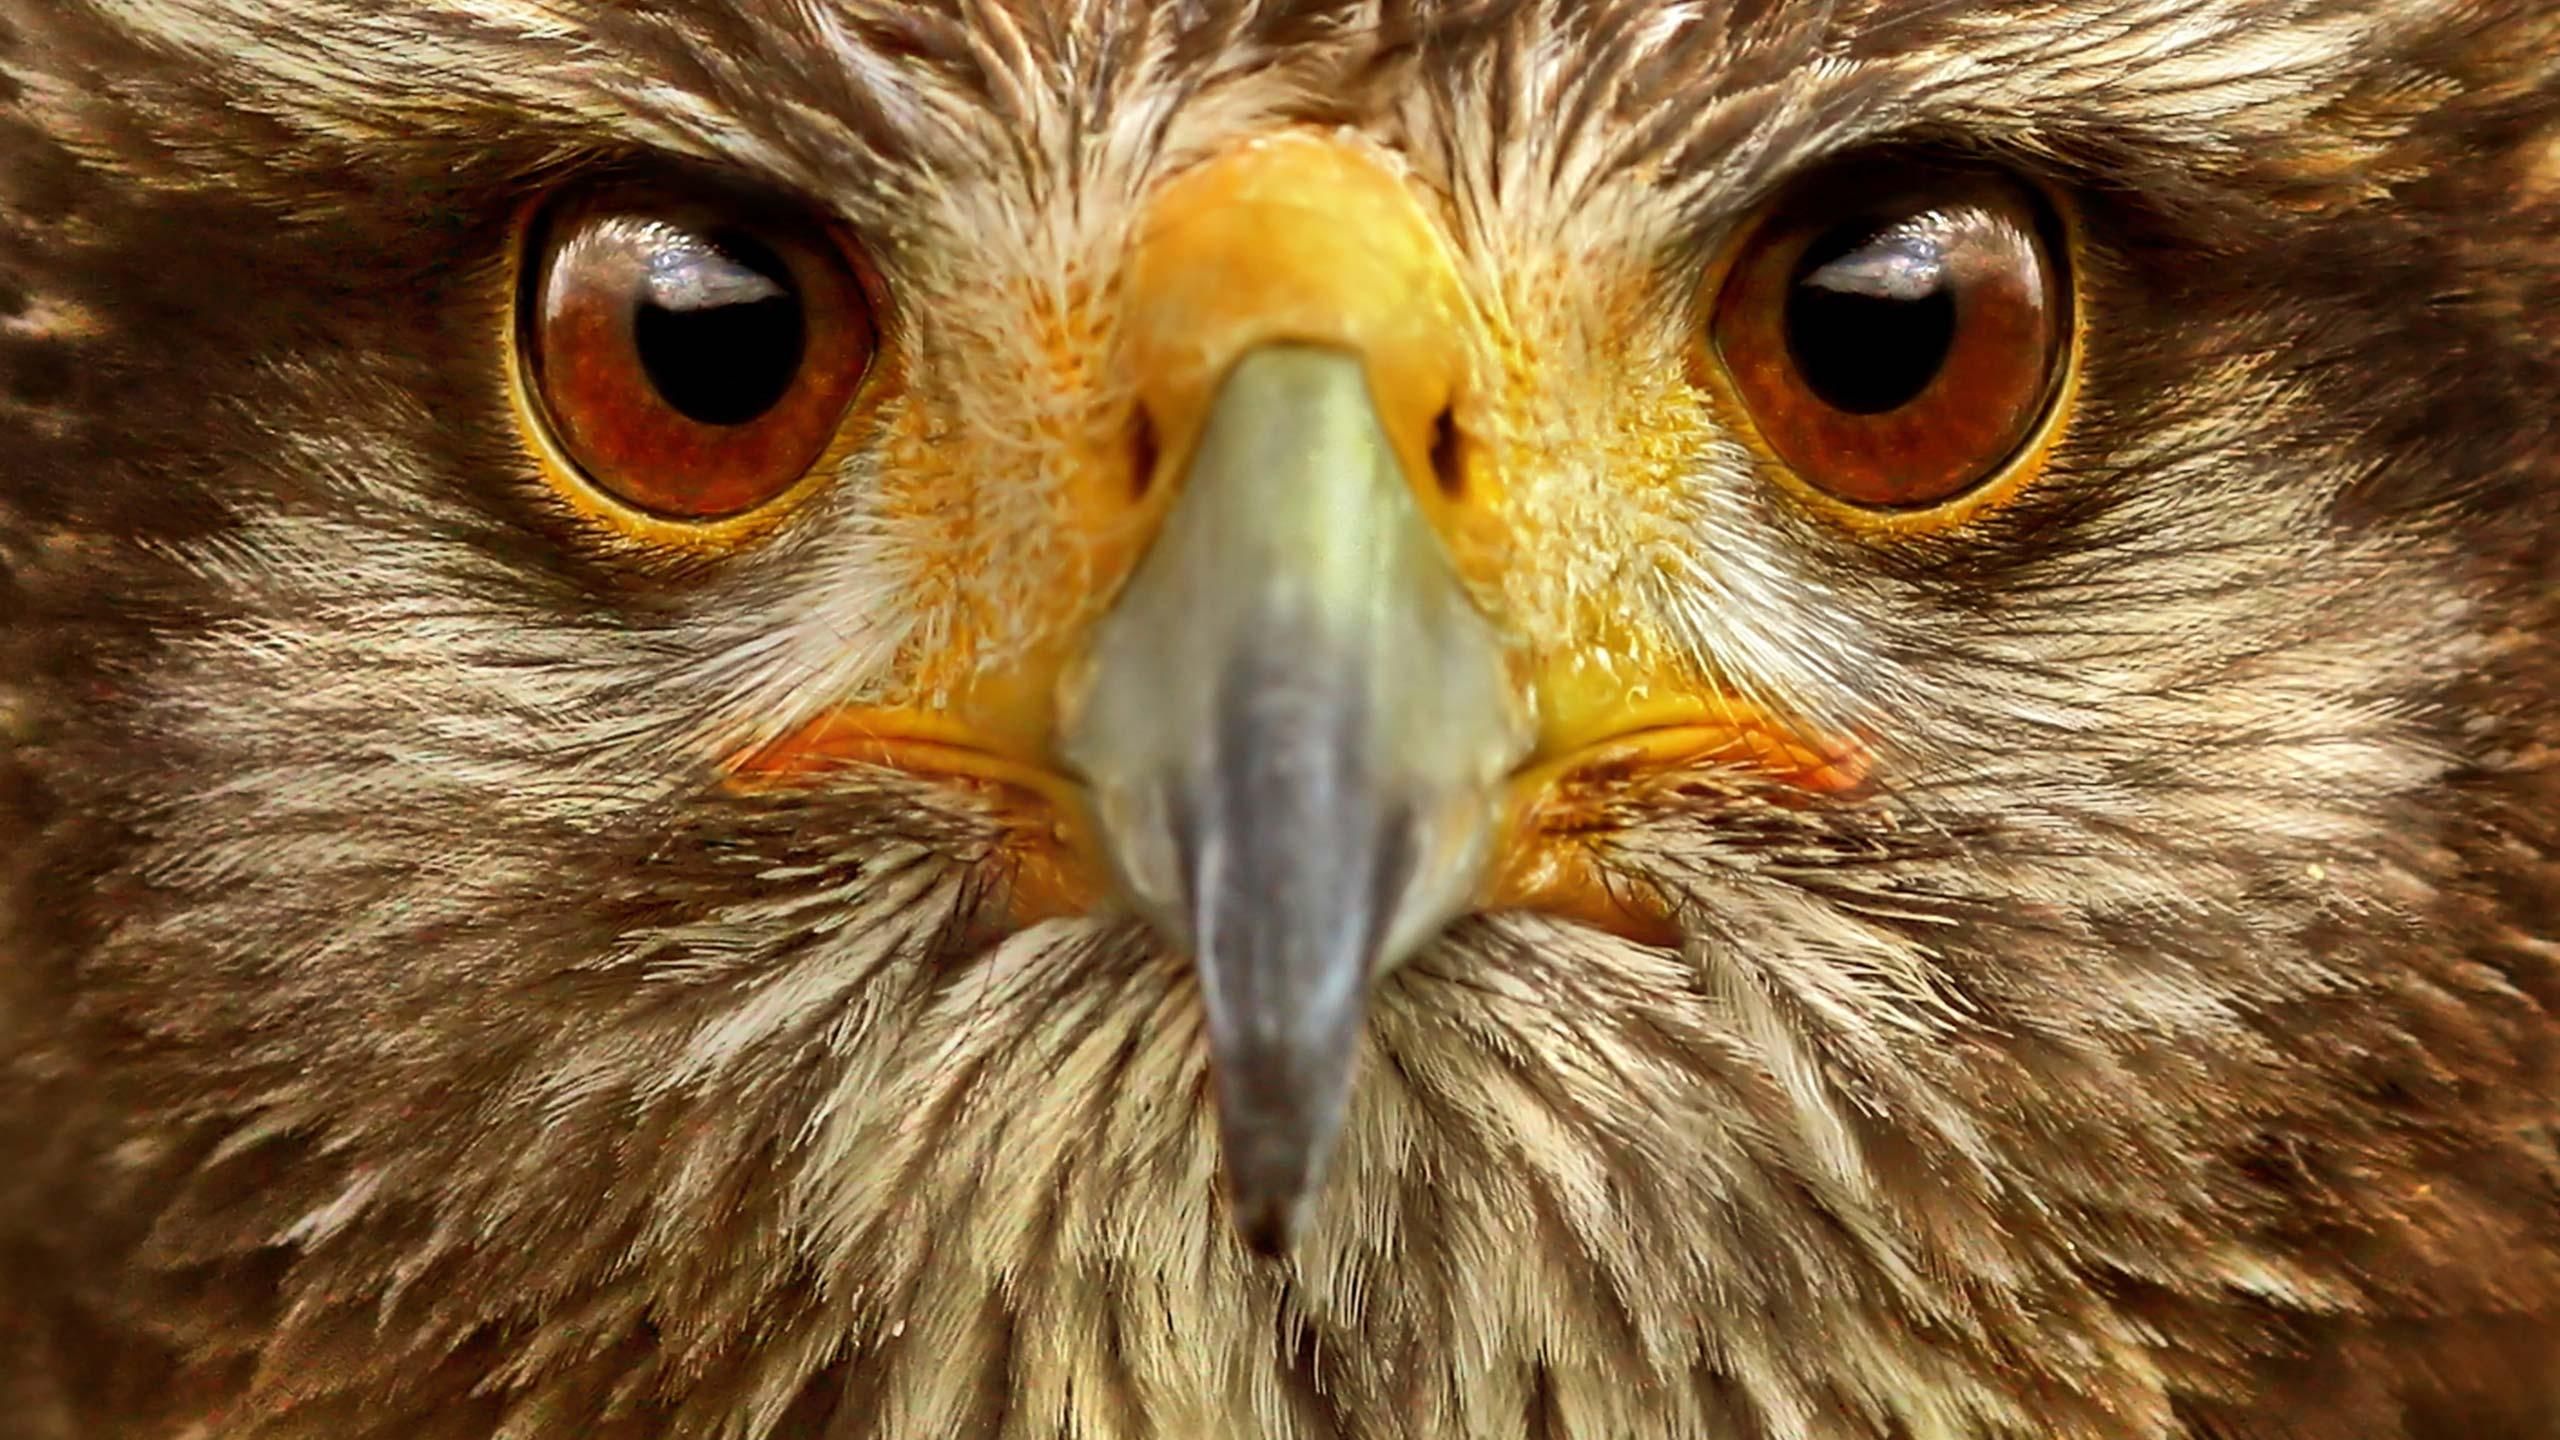 hawk eyes bird | Hawk Bird Eyes Animal Kingdom Wallpaper with ...